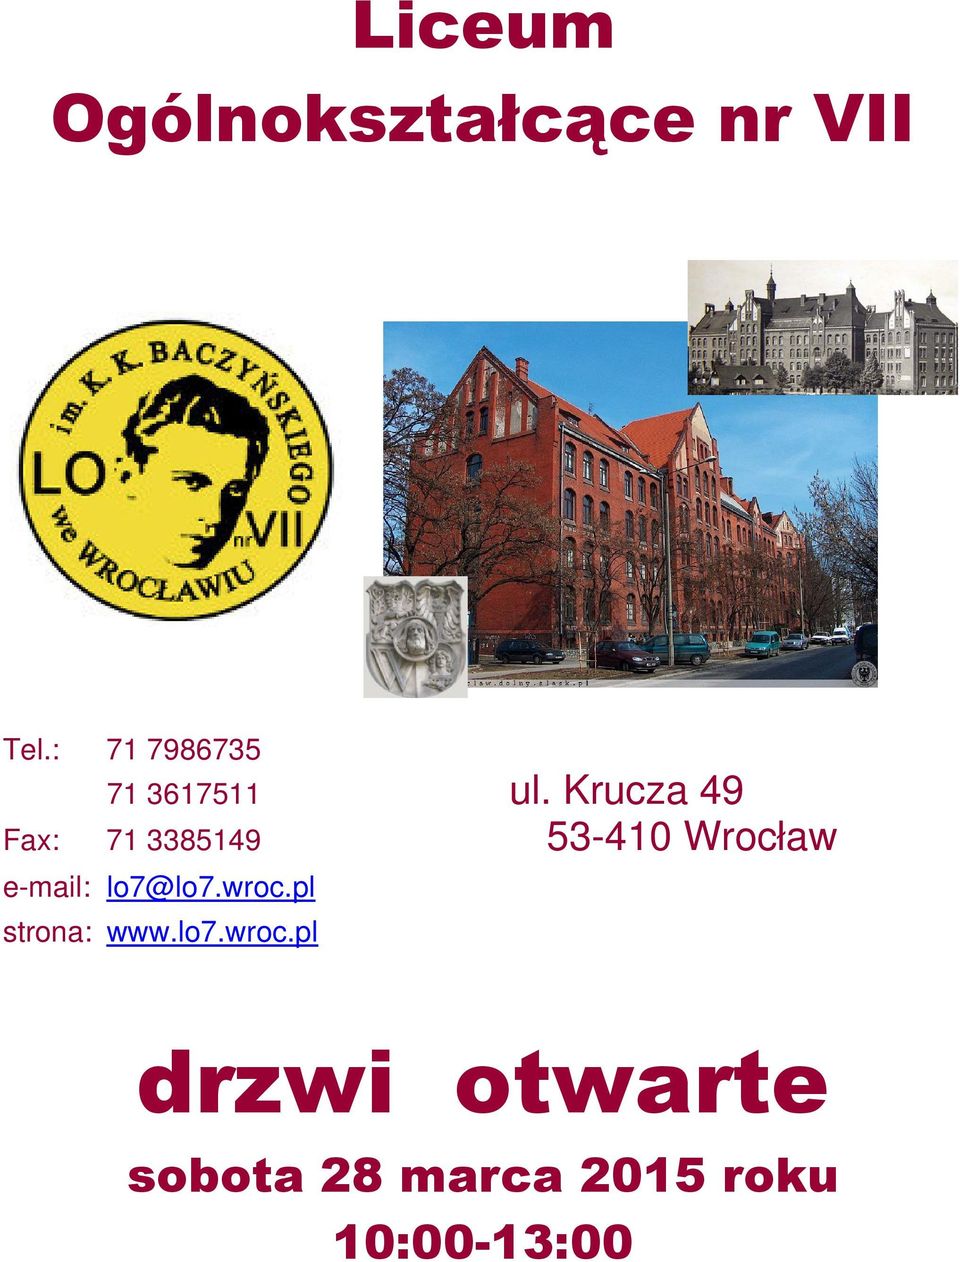 Krucza 49 Fax: 71 3385149 53-410 Wrocław e-mail: